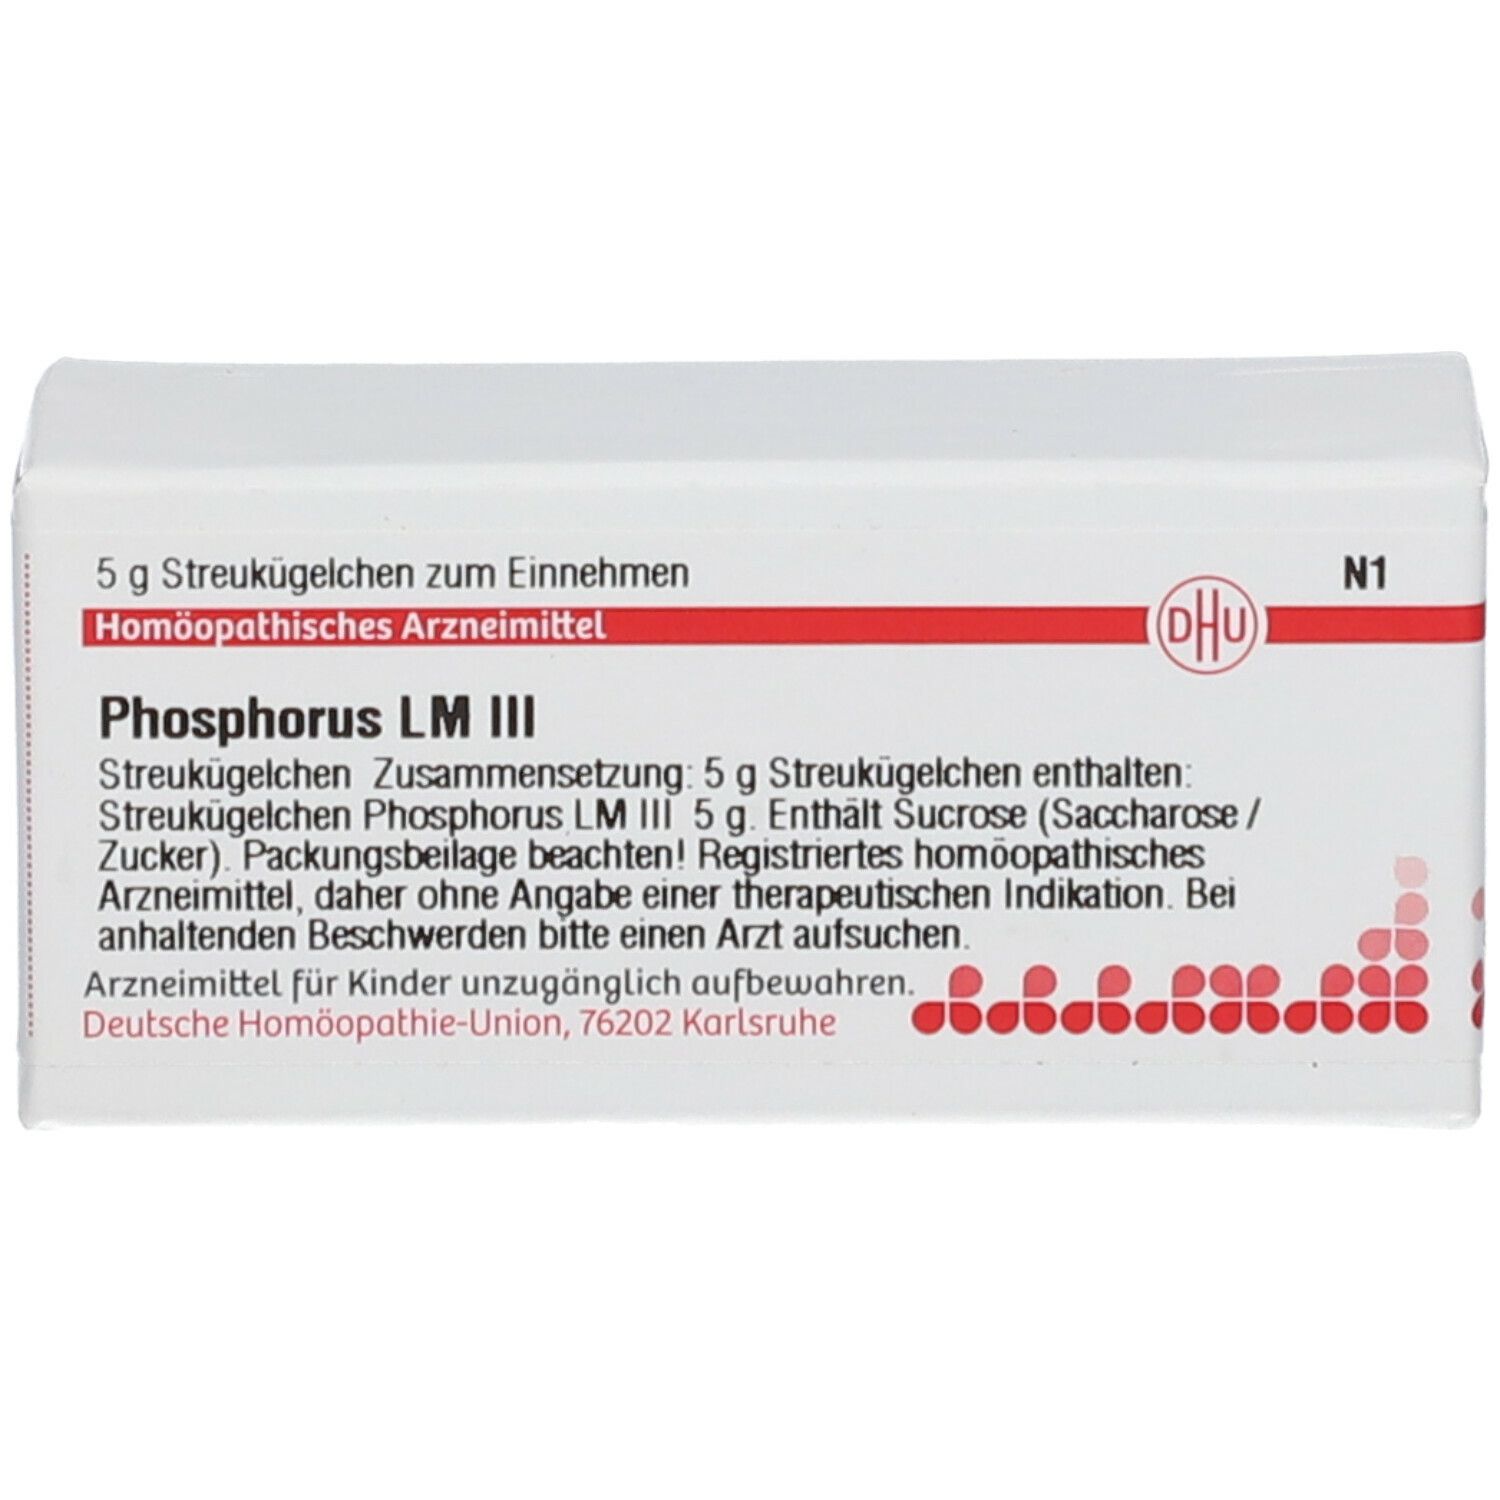 DHU Phosphorus LM III